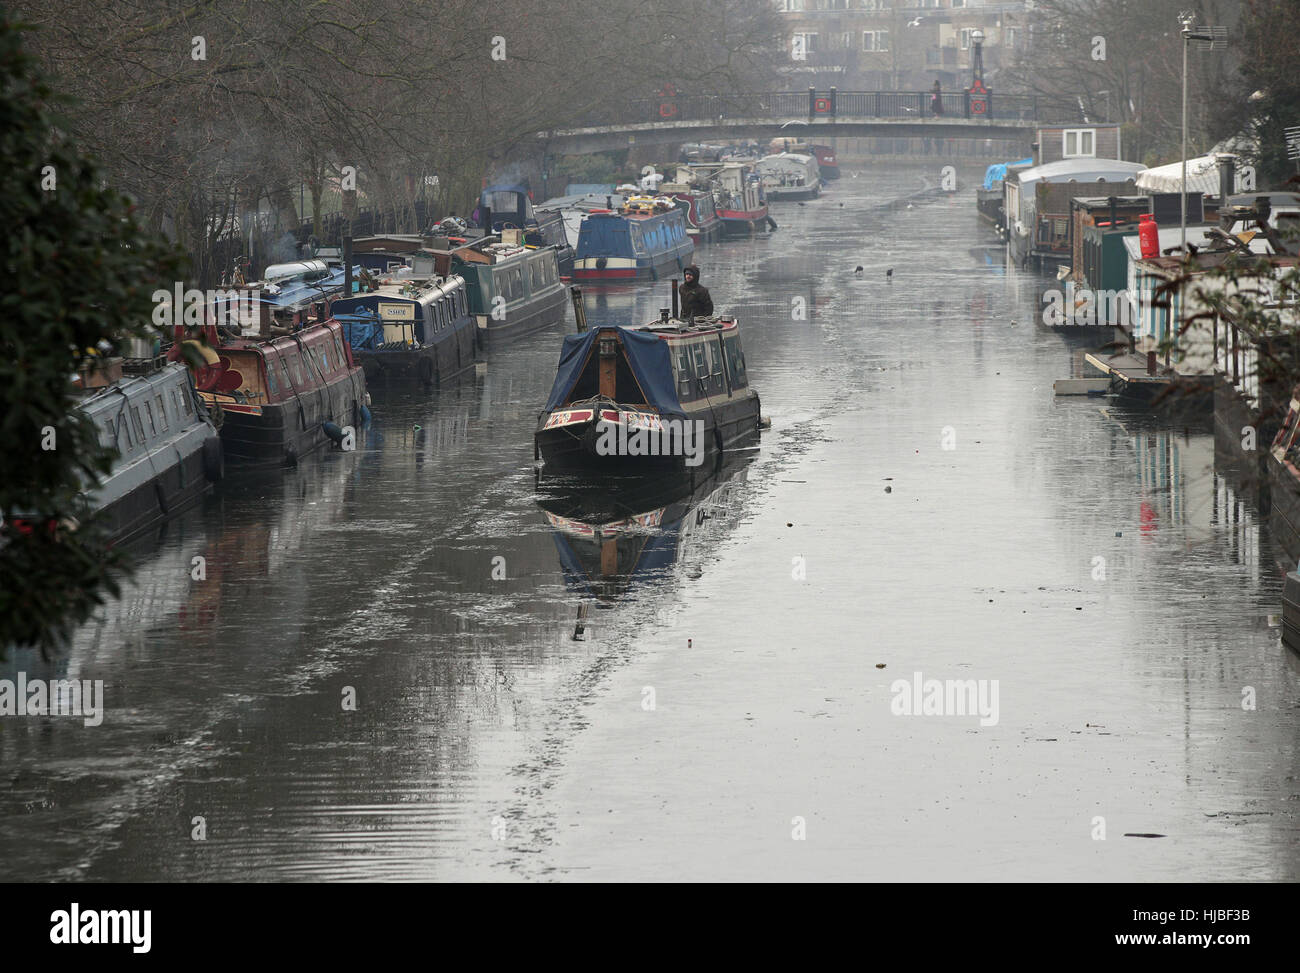 Ein Narrowboat macht seinen Weg nach unten eine teilweise gefrorenen Grand Union Canal in Klein-Venedig, London, als Dichter Nebel verursacht Reisen Störung über Südengland, mit Tausenden von Fluggästen gegenüber Annullierungen und Verspätungen. Stockfoto